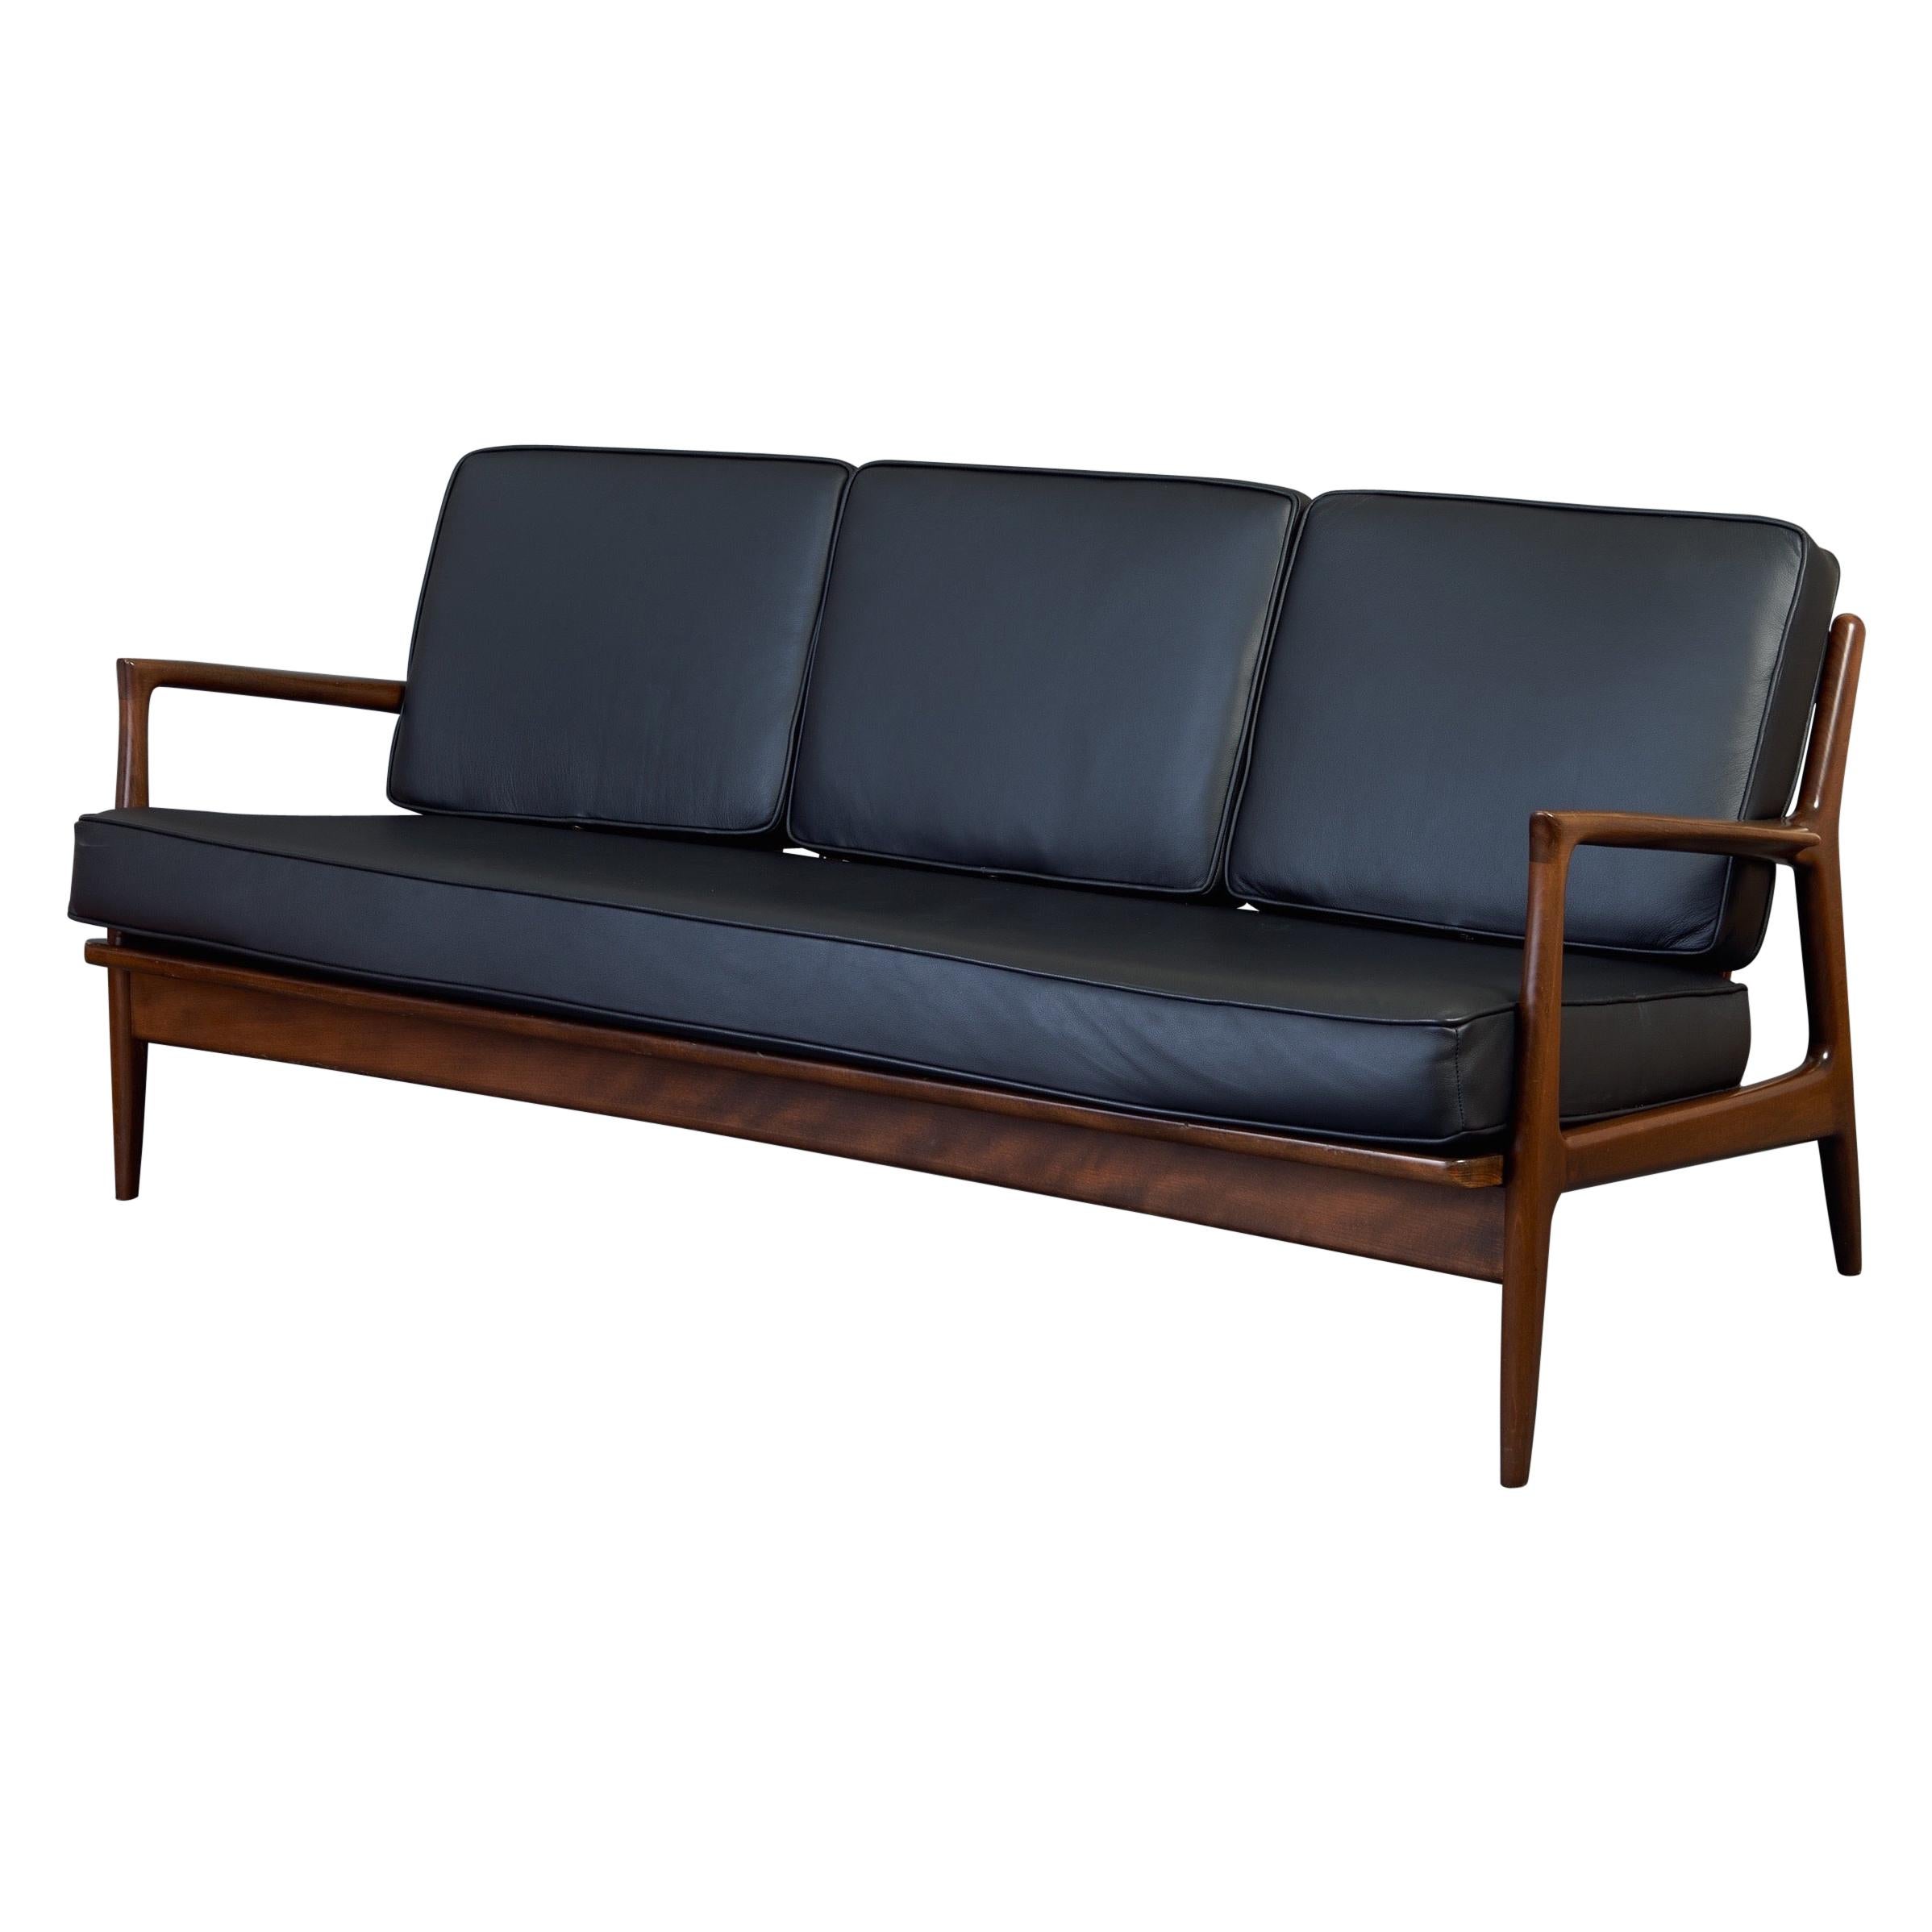 Elegantes modernes dänisches Sofa von Ib Kofod-Larsen aus Teakholz und schwarzem Leder, 1950er Jahre